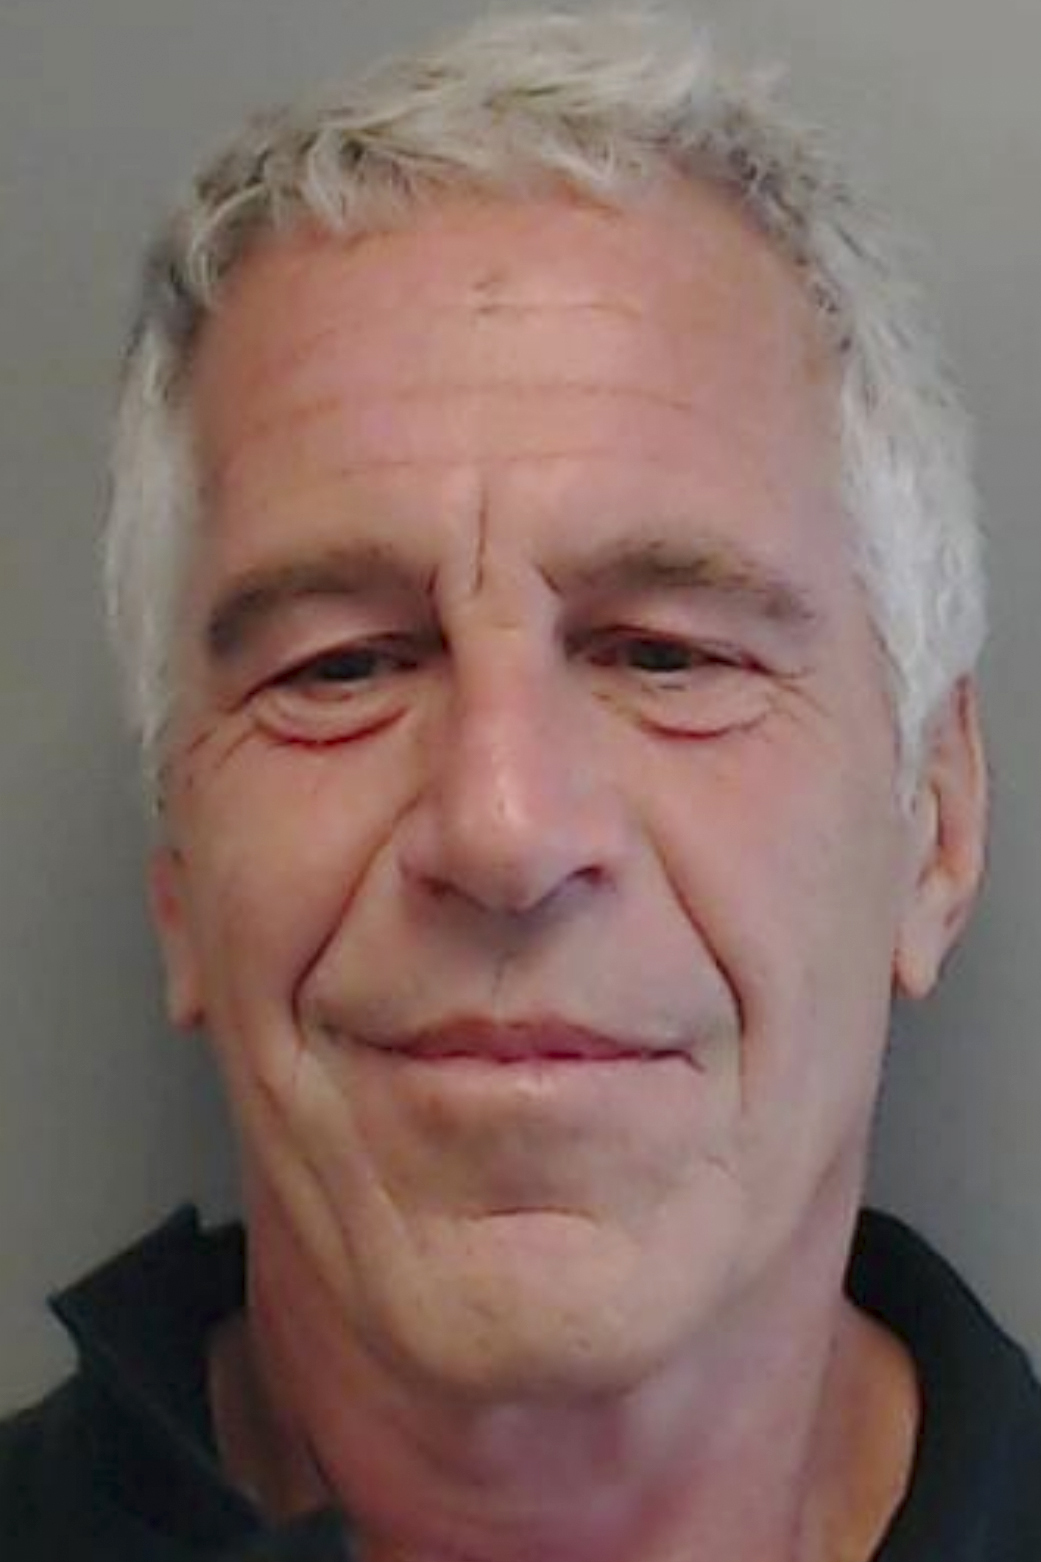 Jeffrey Epstein Denied Bail In Sex Trafficking Case Shropshire Star 